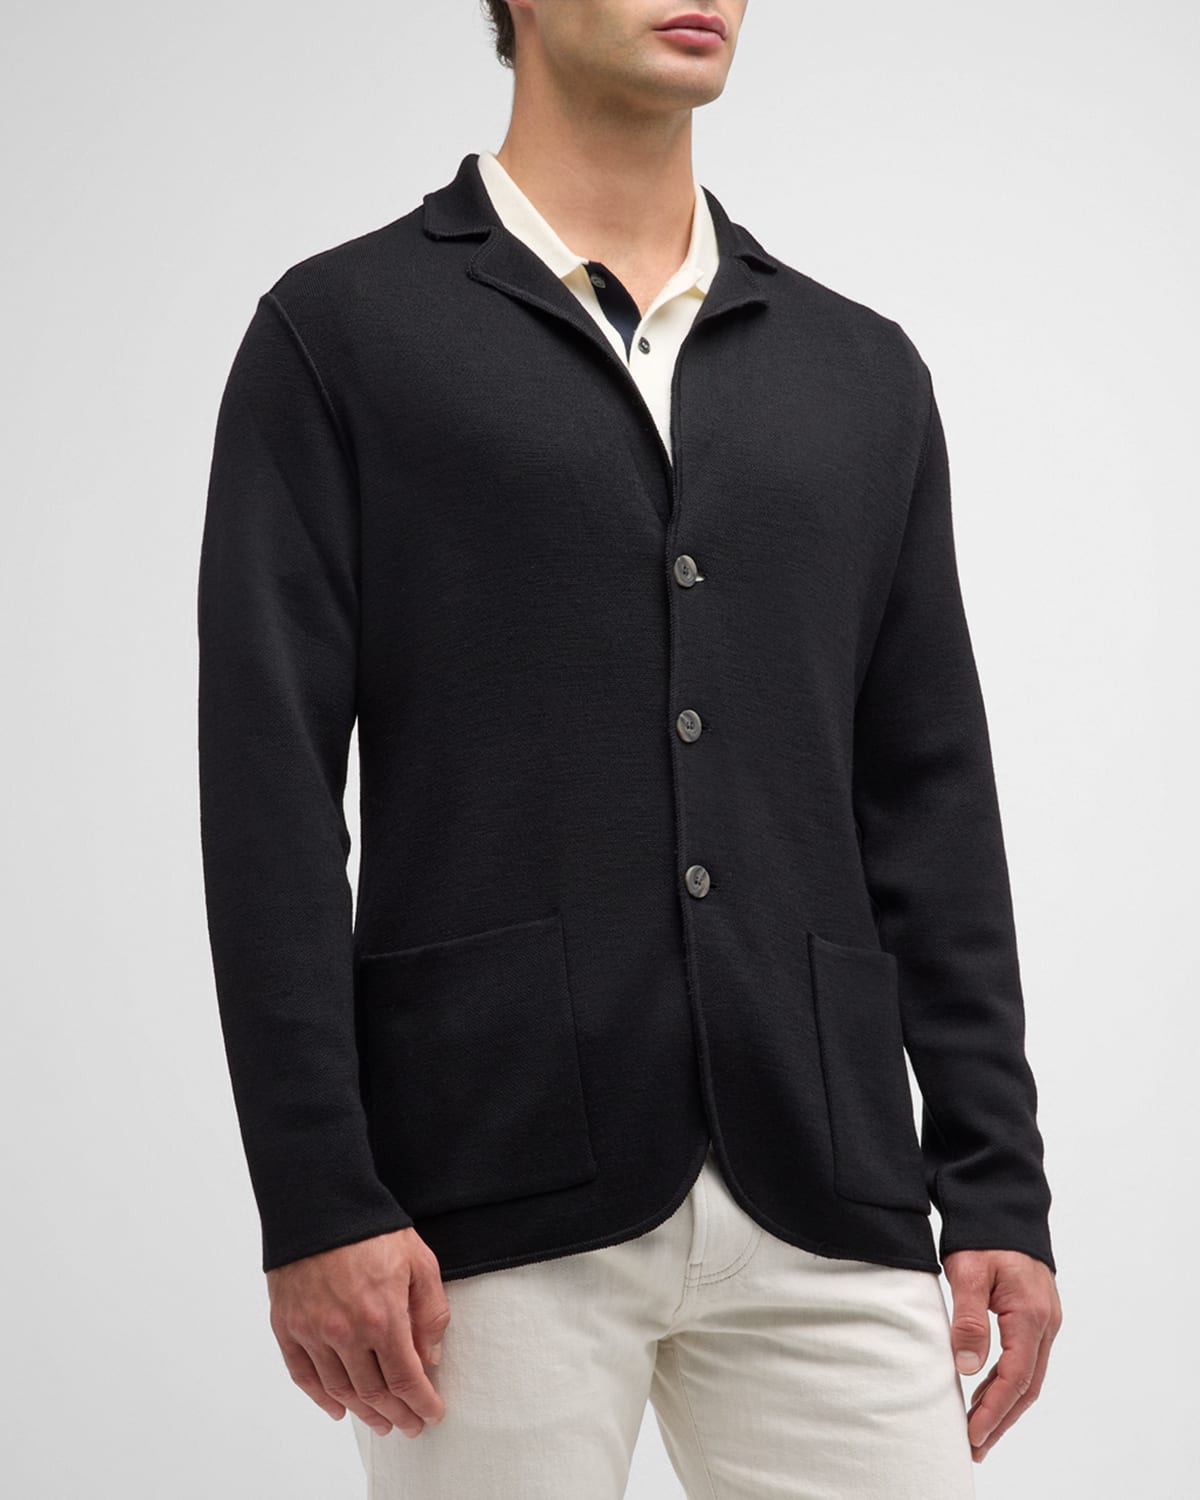 Baldassari Men's Three-button Sweater Jacket In Black